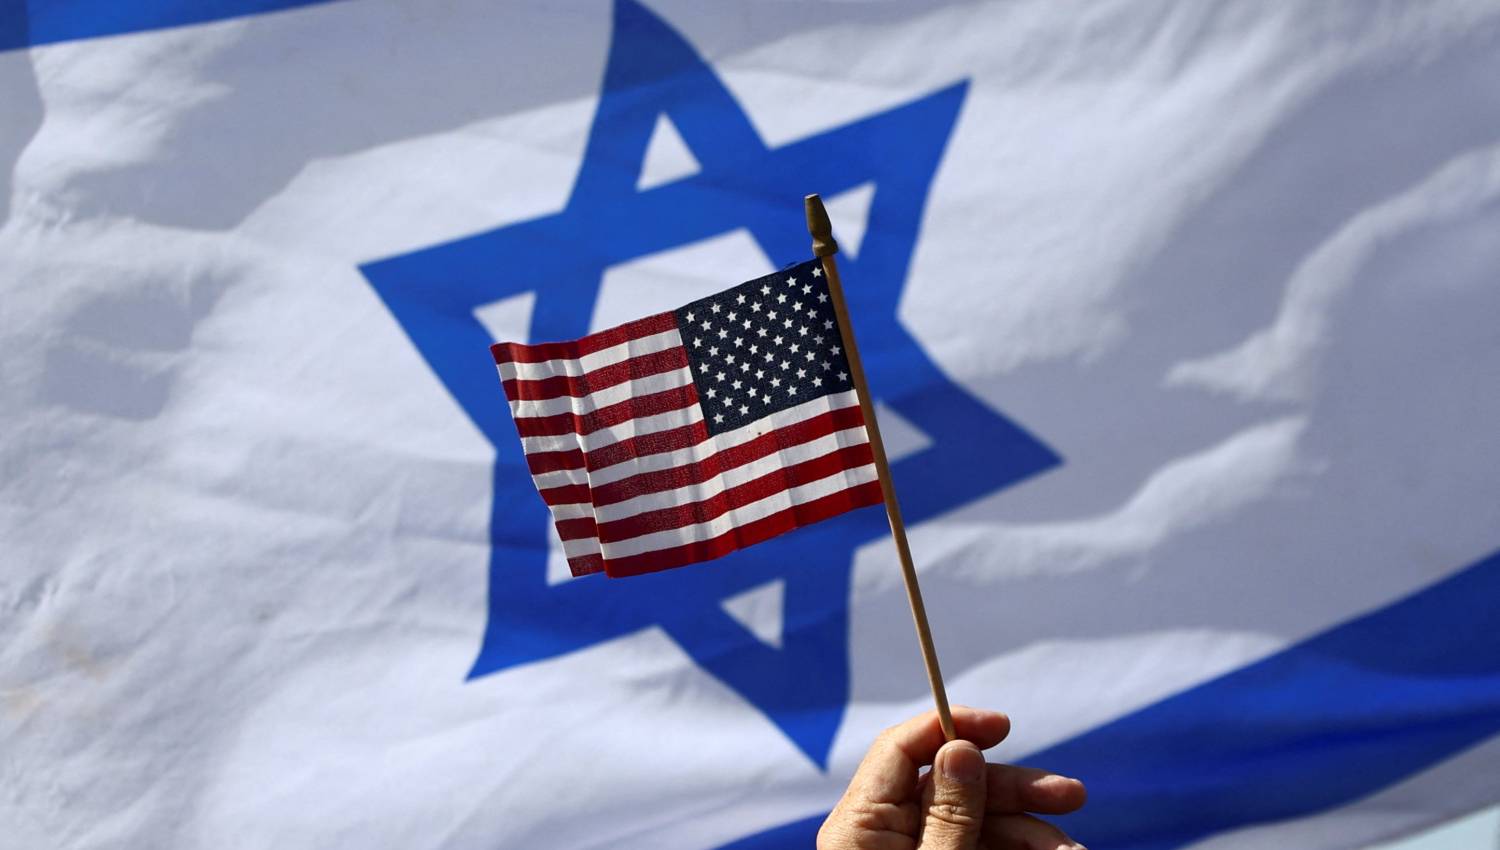 الوقوف إلى جانب إسرائيل مكلف: الإدارة الأميركية بدأت بإحصاء الخسائر